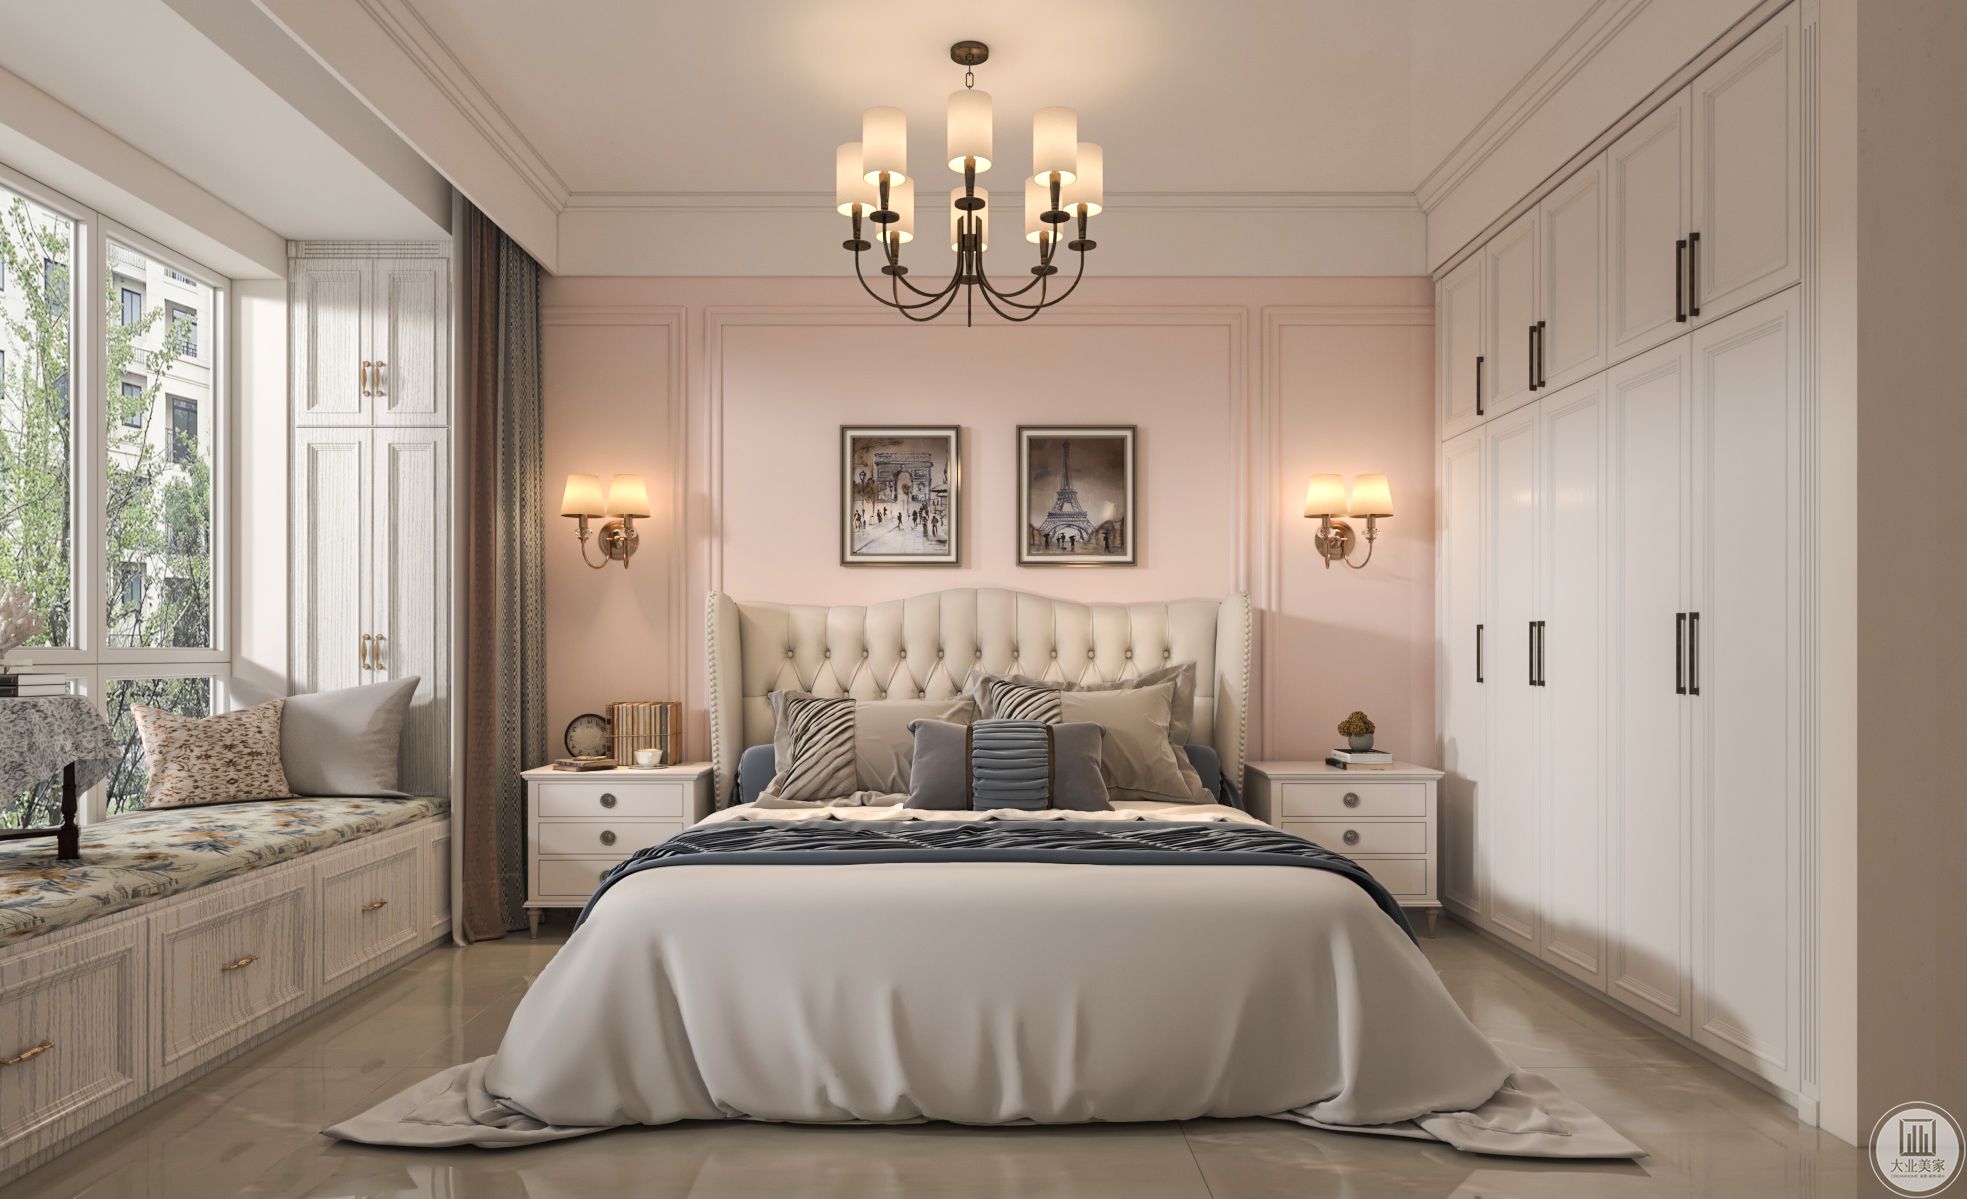 卧室作为主人的私密空间布置较为温馨，主要以功能性和实用舒适为考虑的重点，多用温馨柔软的成套布艺来装点。